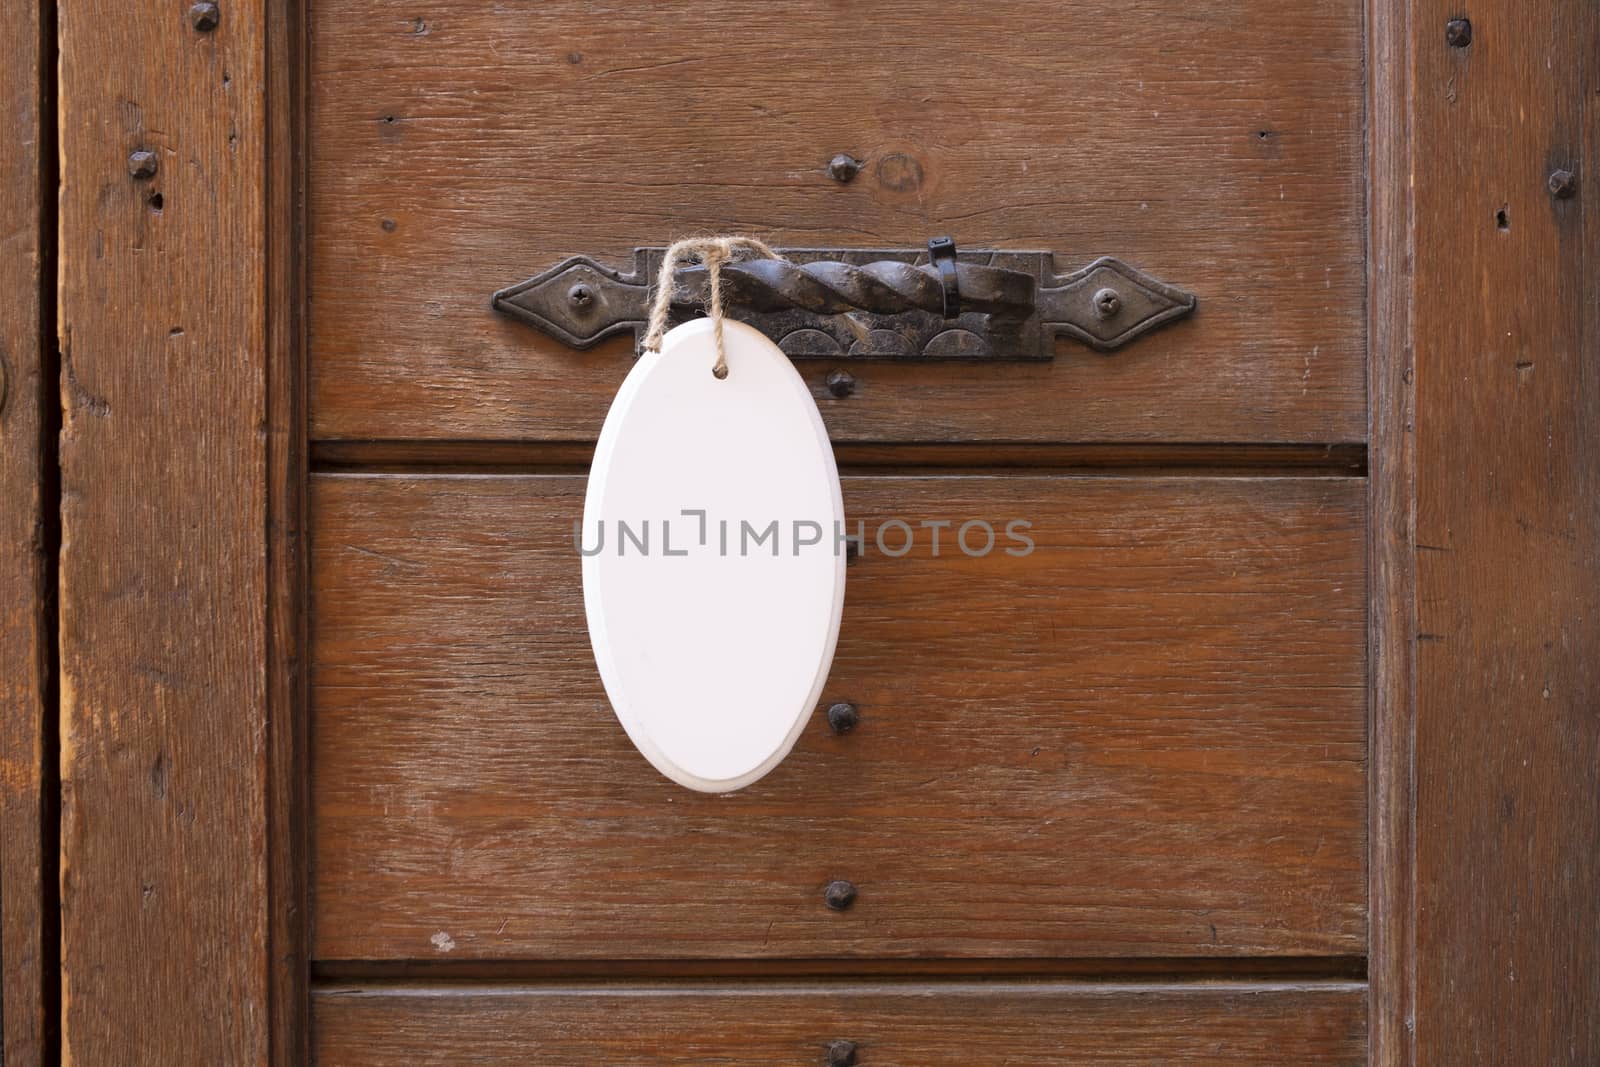 Antique door handle on a wooden door with a white sign hanging on a door by Tjeerdkruse